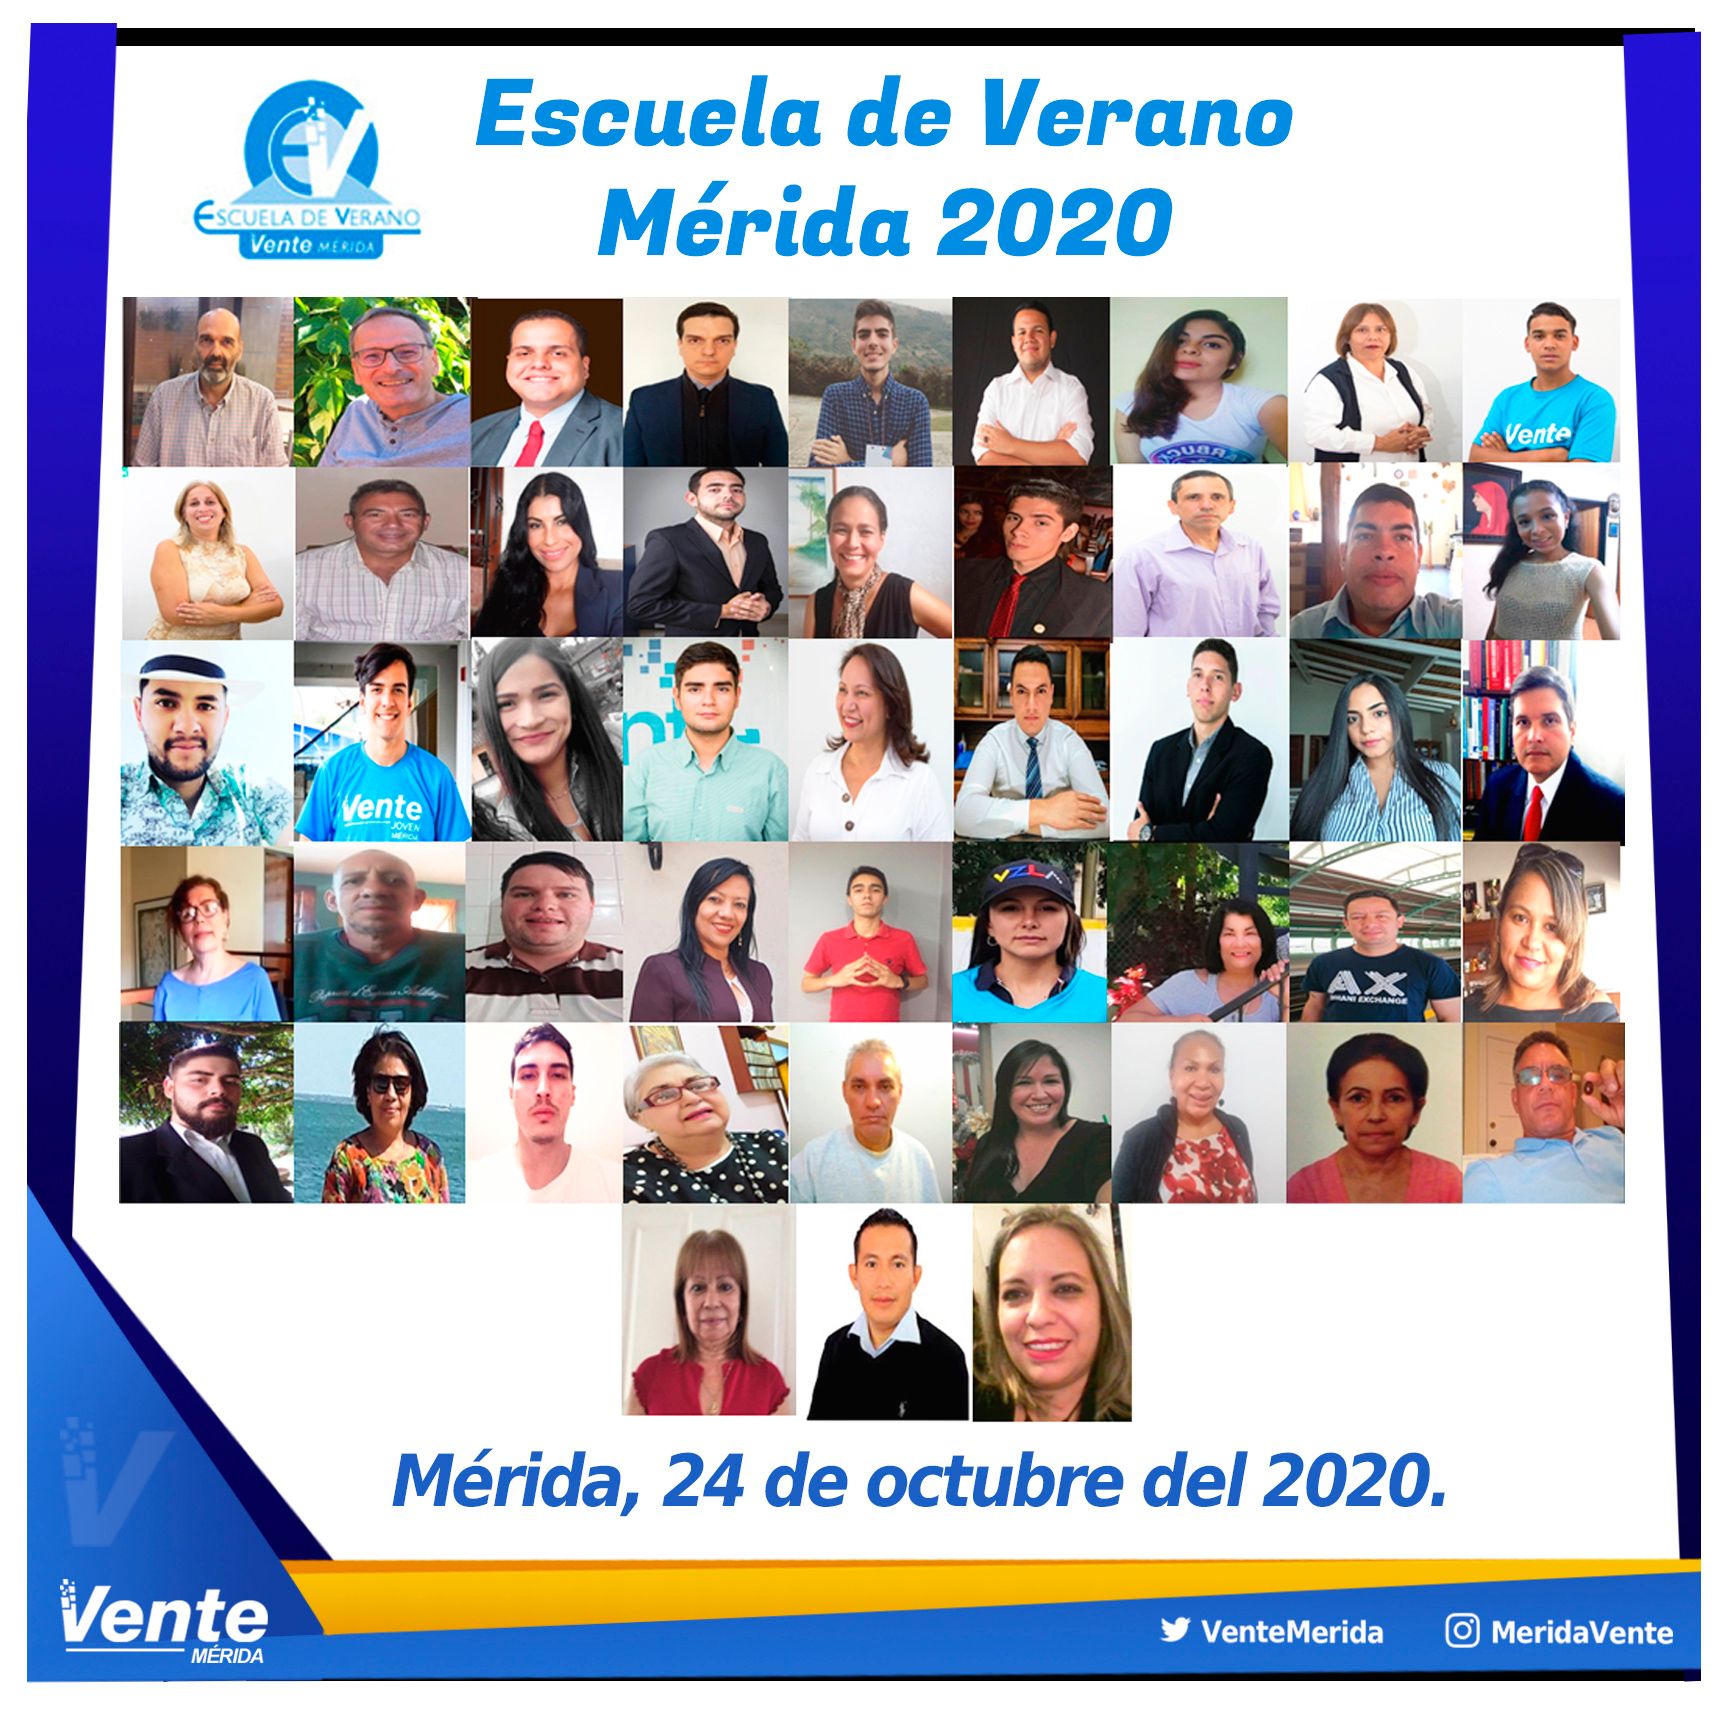 Vente Mérida realiza con éxito el encuentro académico «Escuela de Verano 2020» de forma virtual